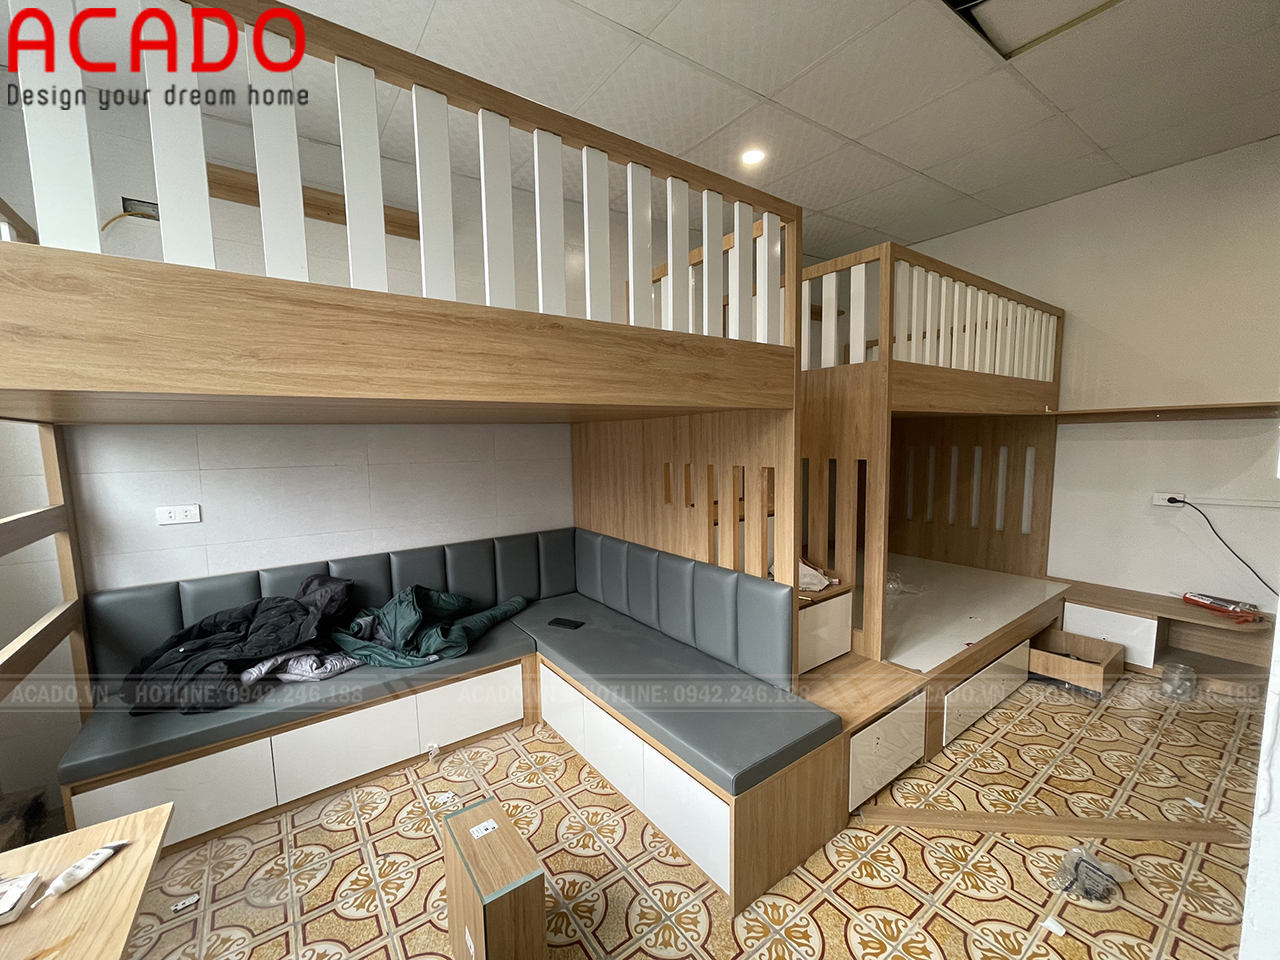 Hệ thông hai giường tầng đôi tận dựng tối đa diện tích, không gian sử dụng